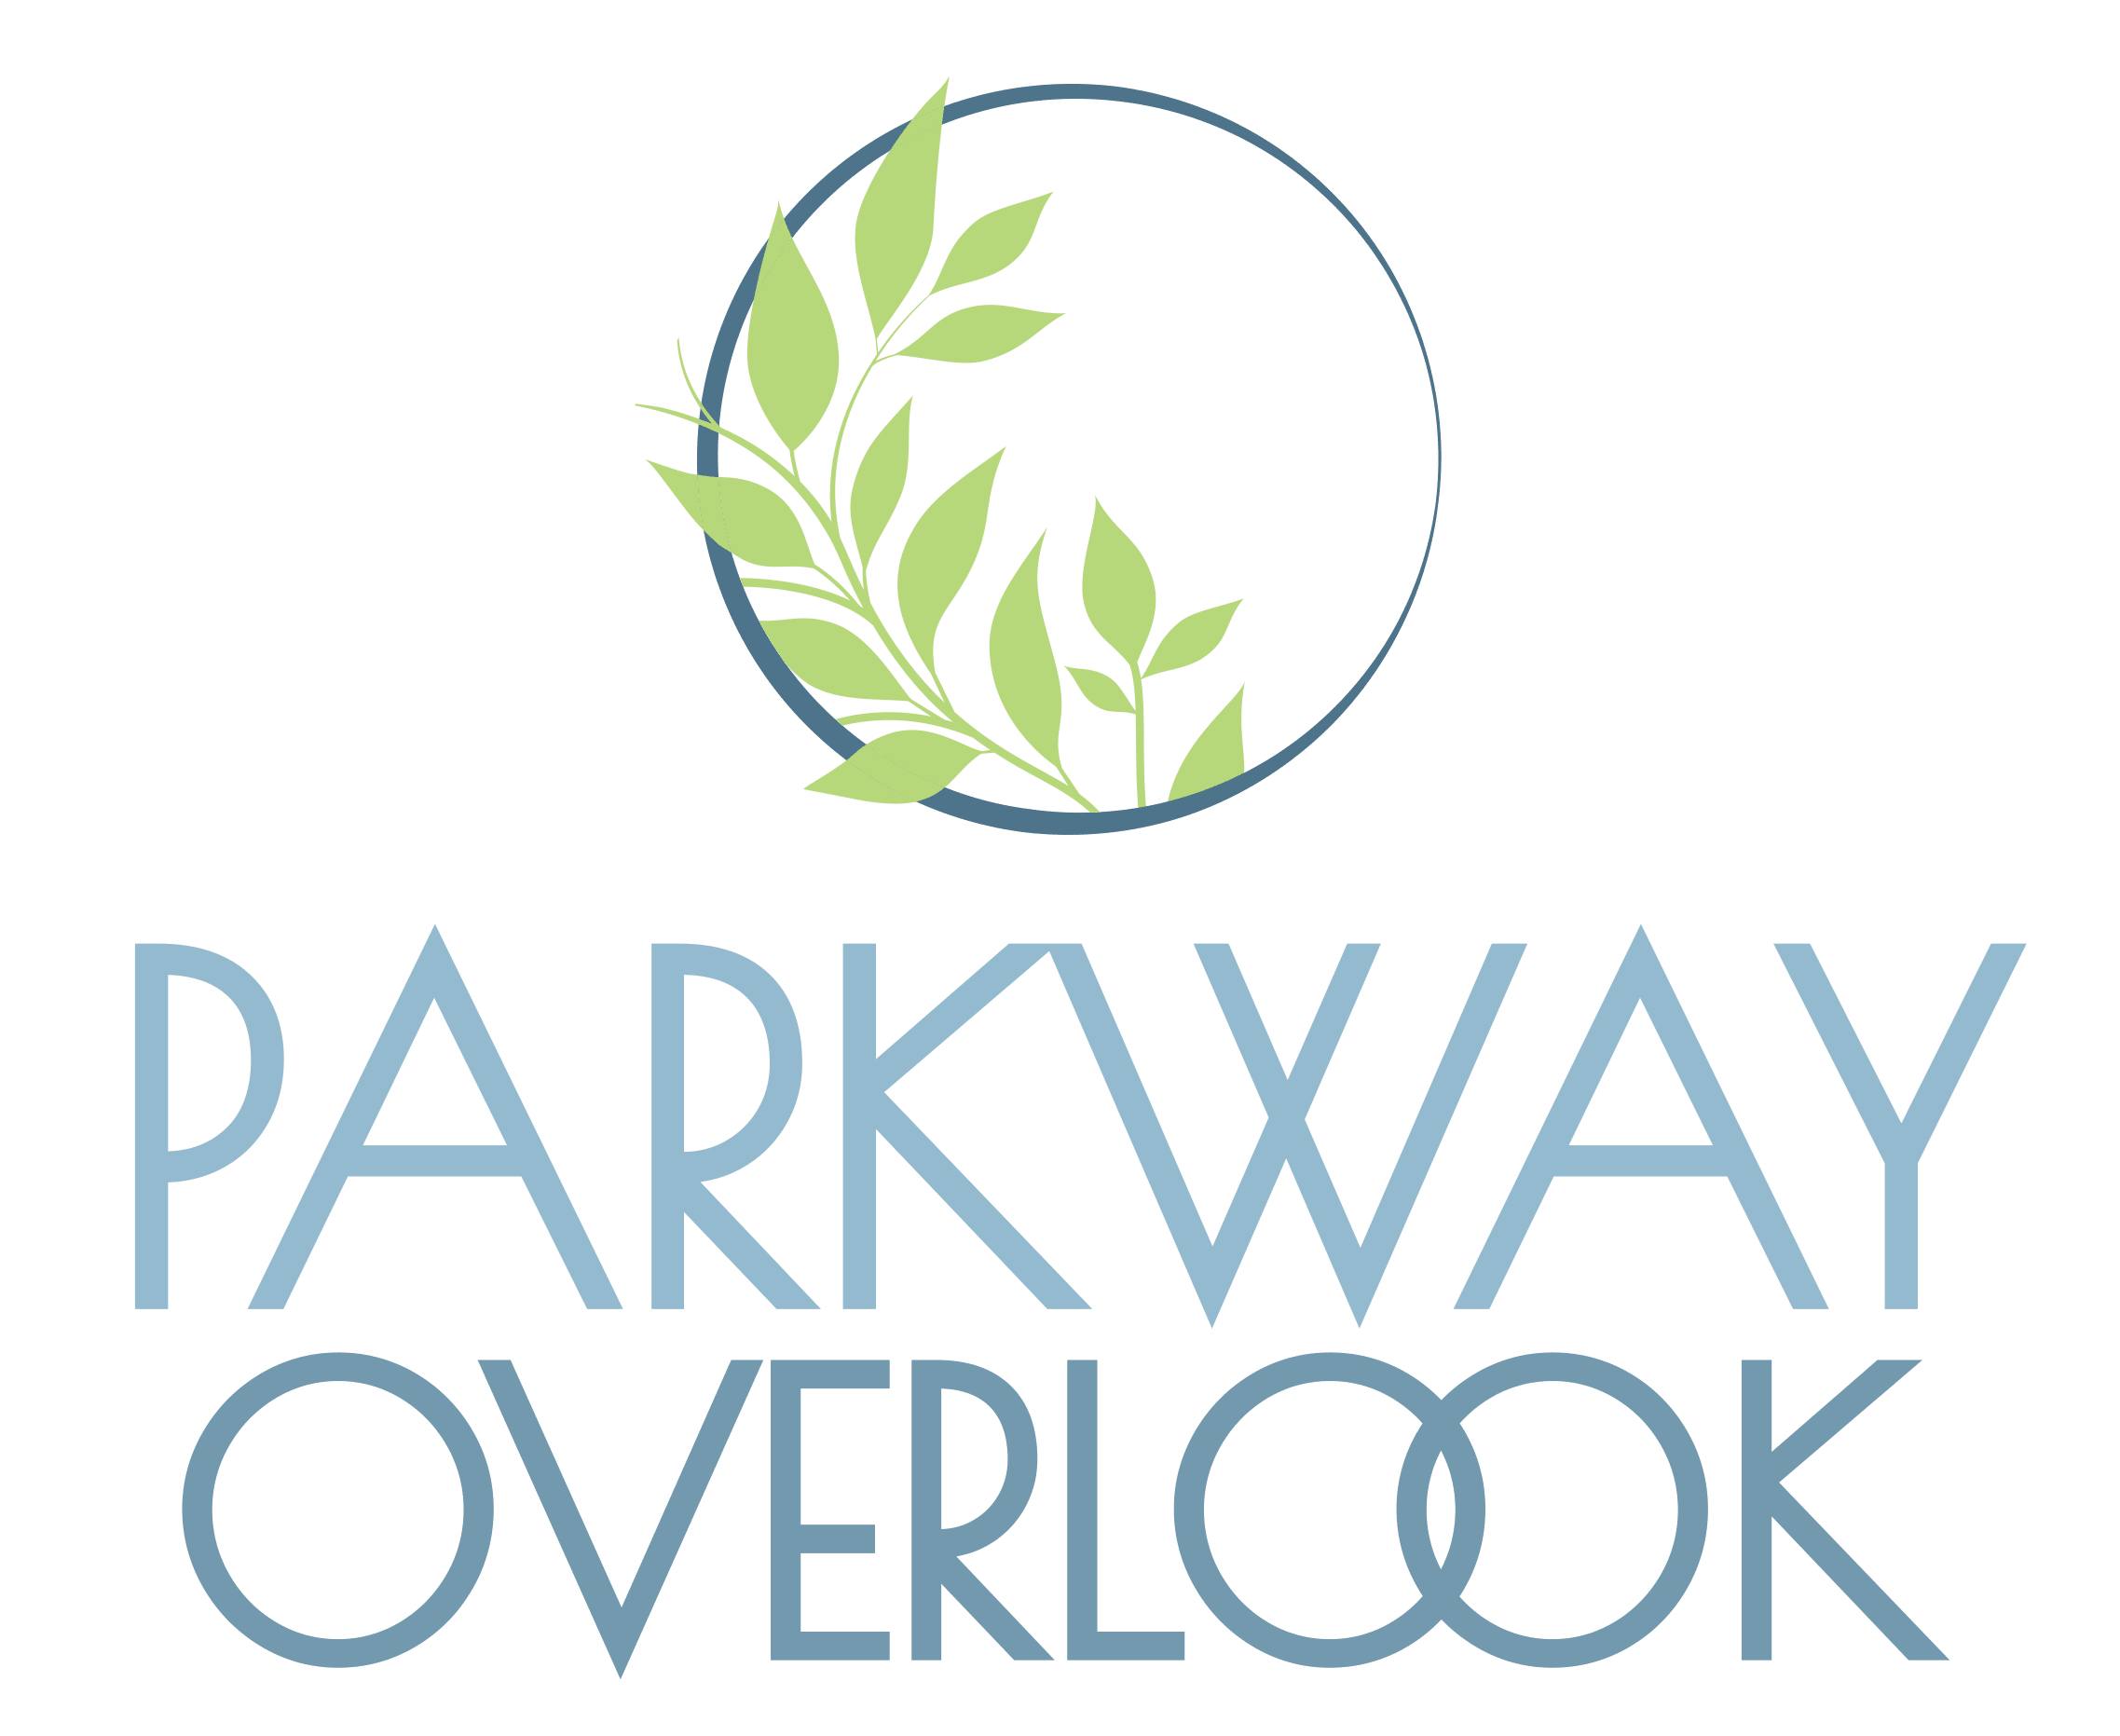 Parkway Overlook